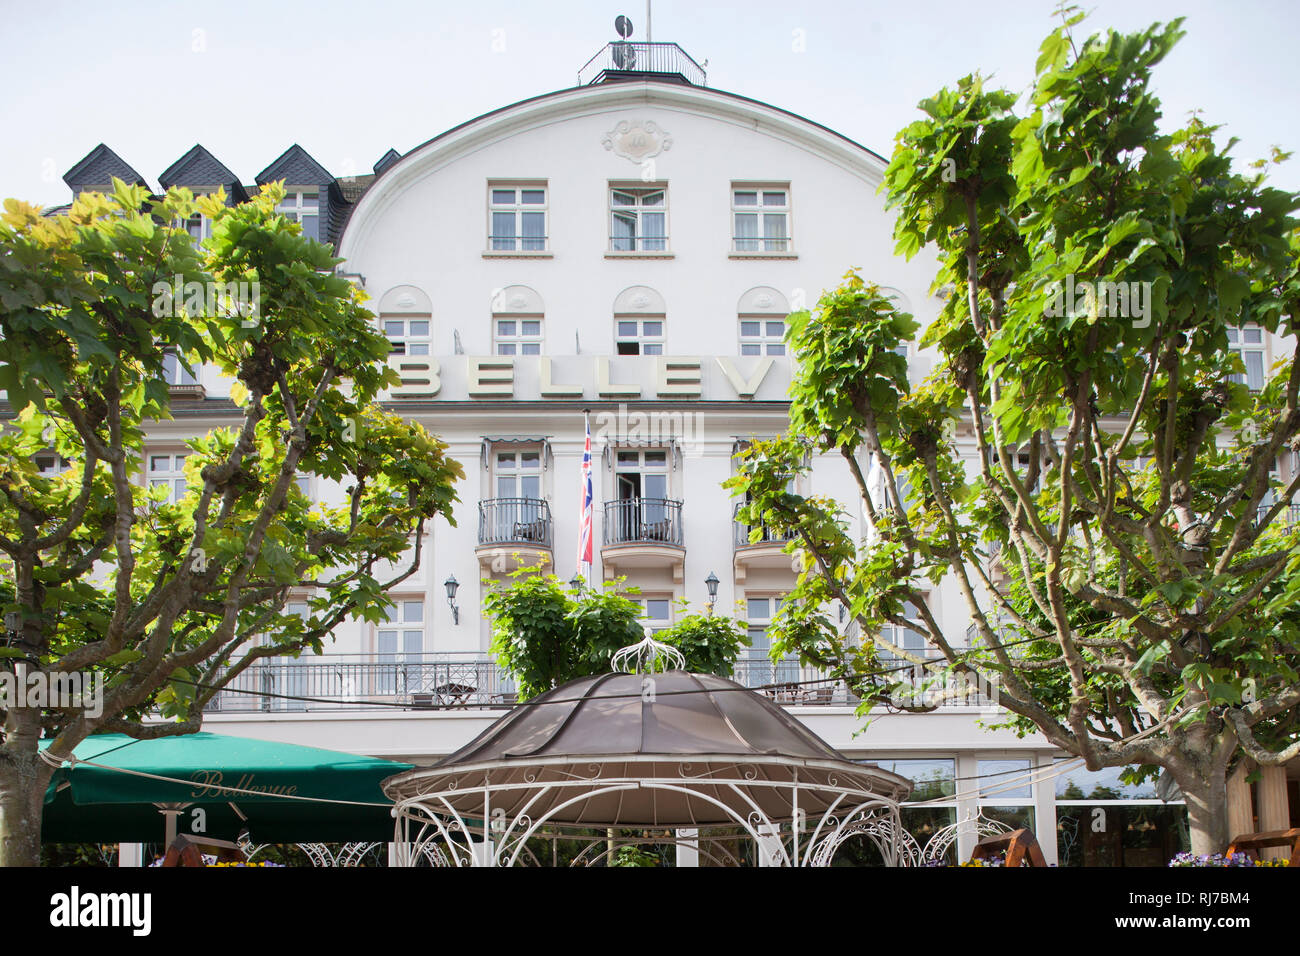 Historisches Hotel Bellevue am Rhein, Boppard, Unesco Weltkulturerbe Oberes Mittelrheintal, Rheinland-Pfalz, Deutschland, Stock Photo